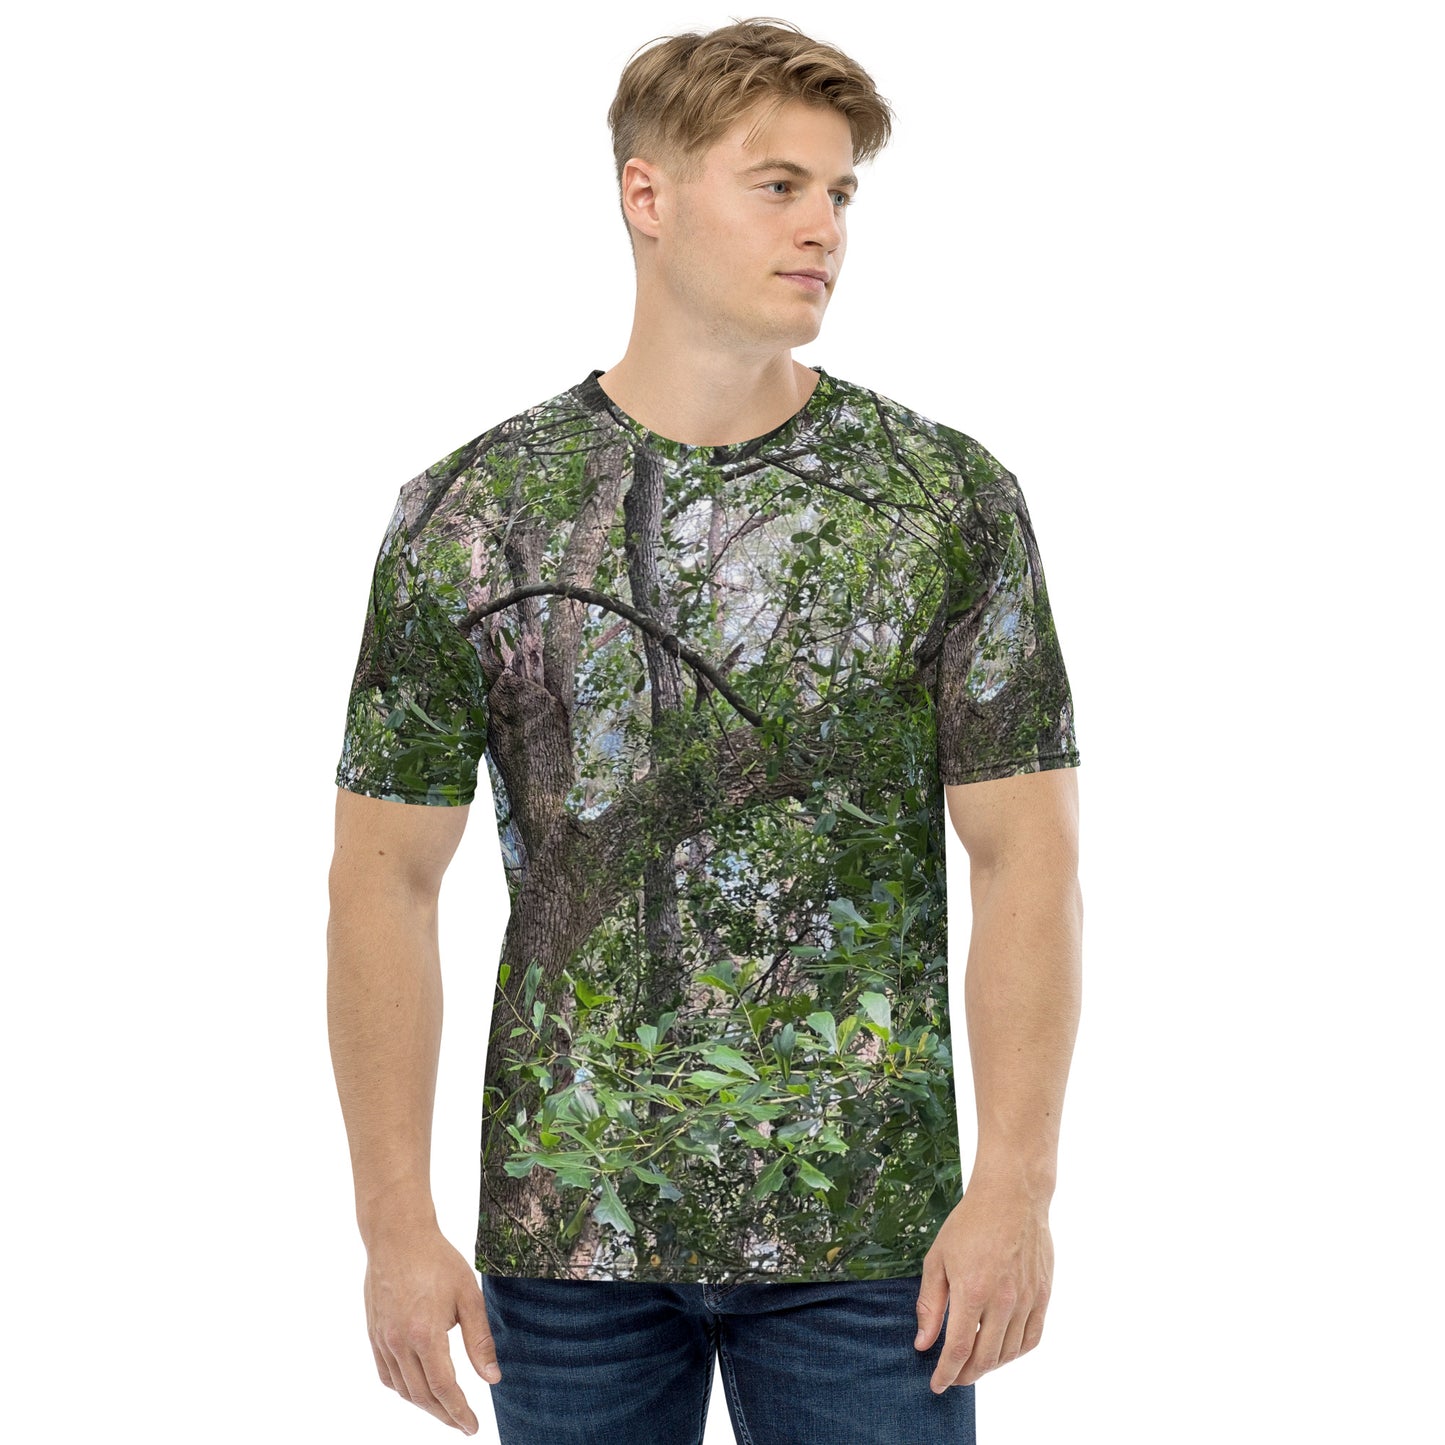 Southern Cameaux Green Oak Men's t-shirt